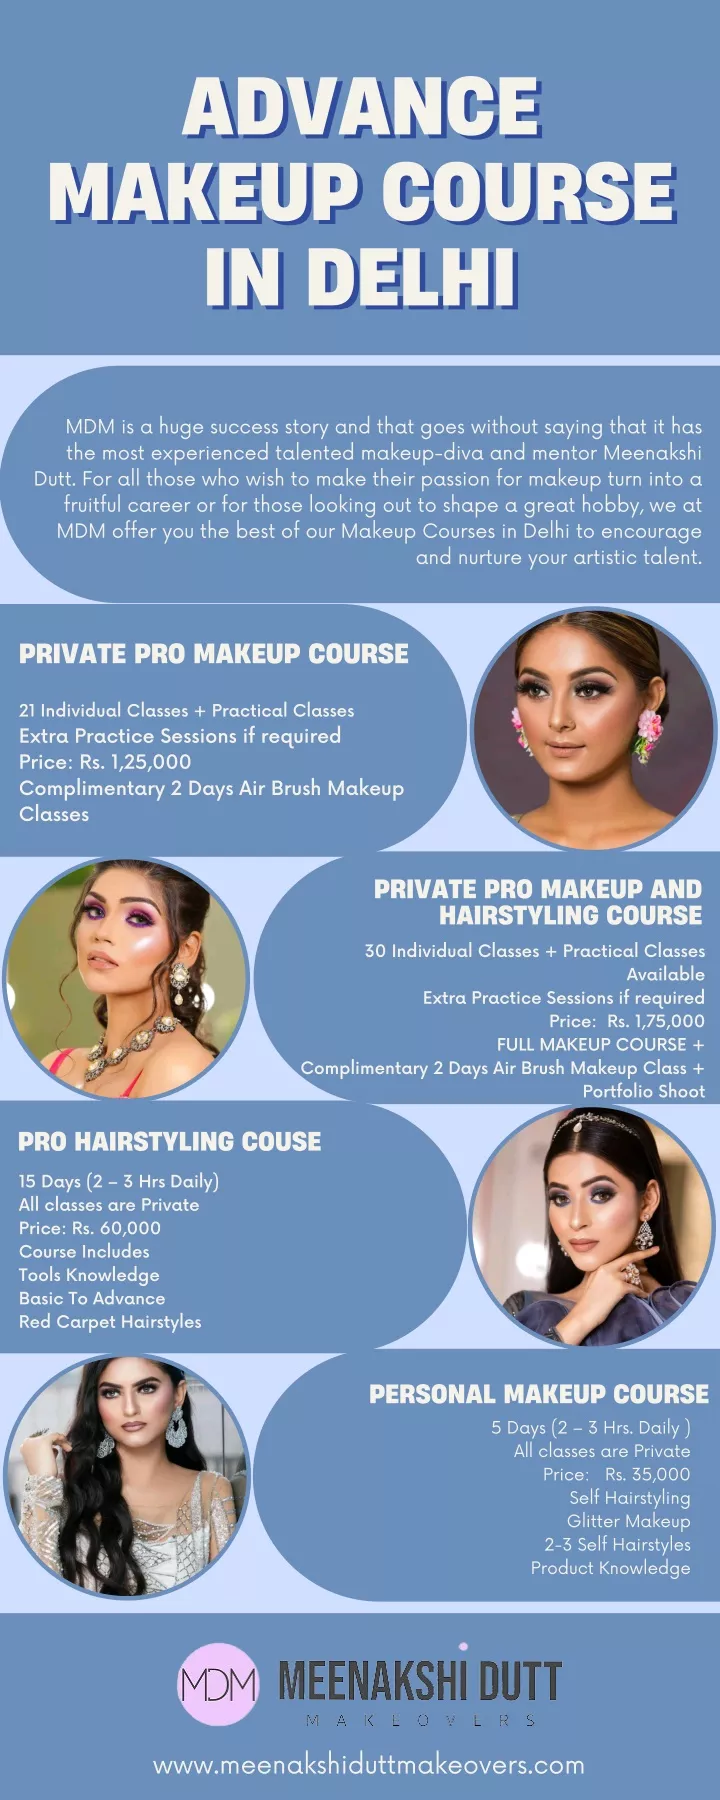 advance advance makeup course makeup course